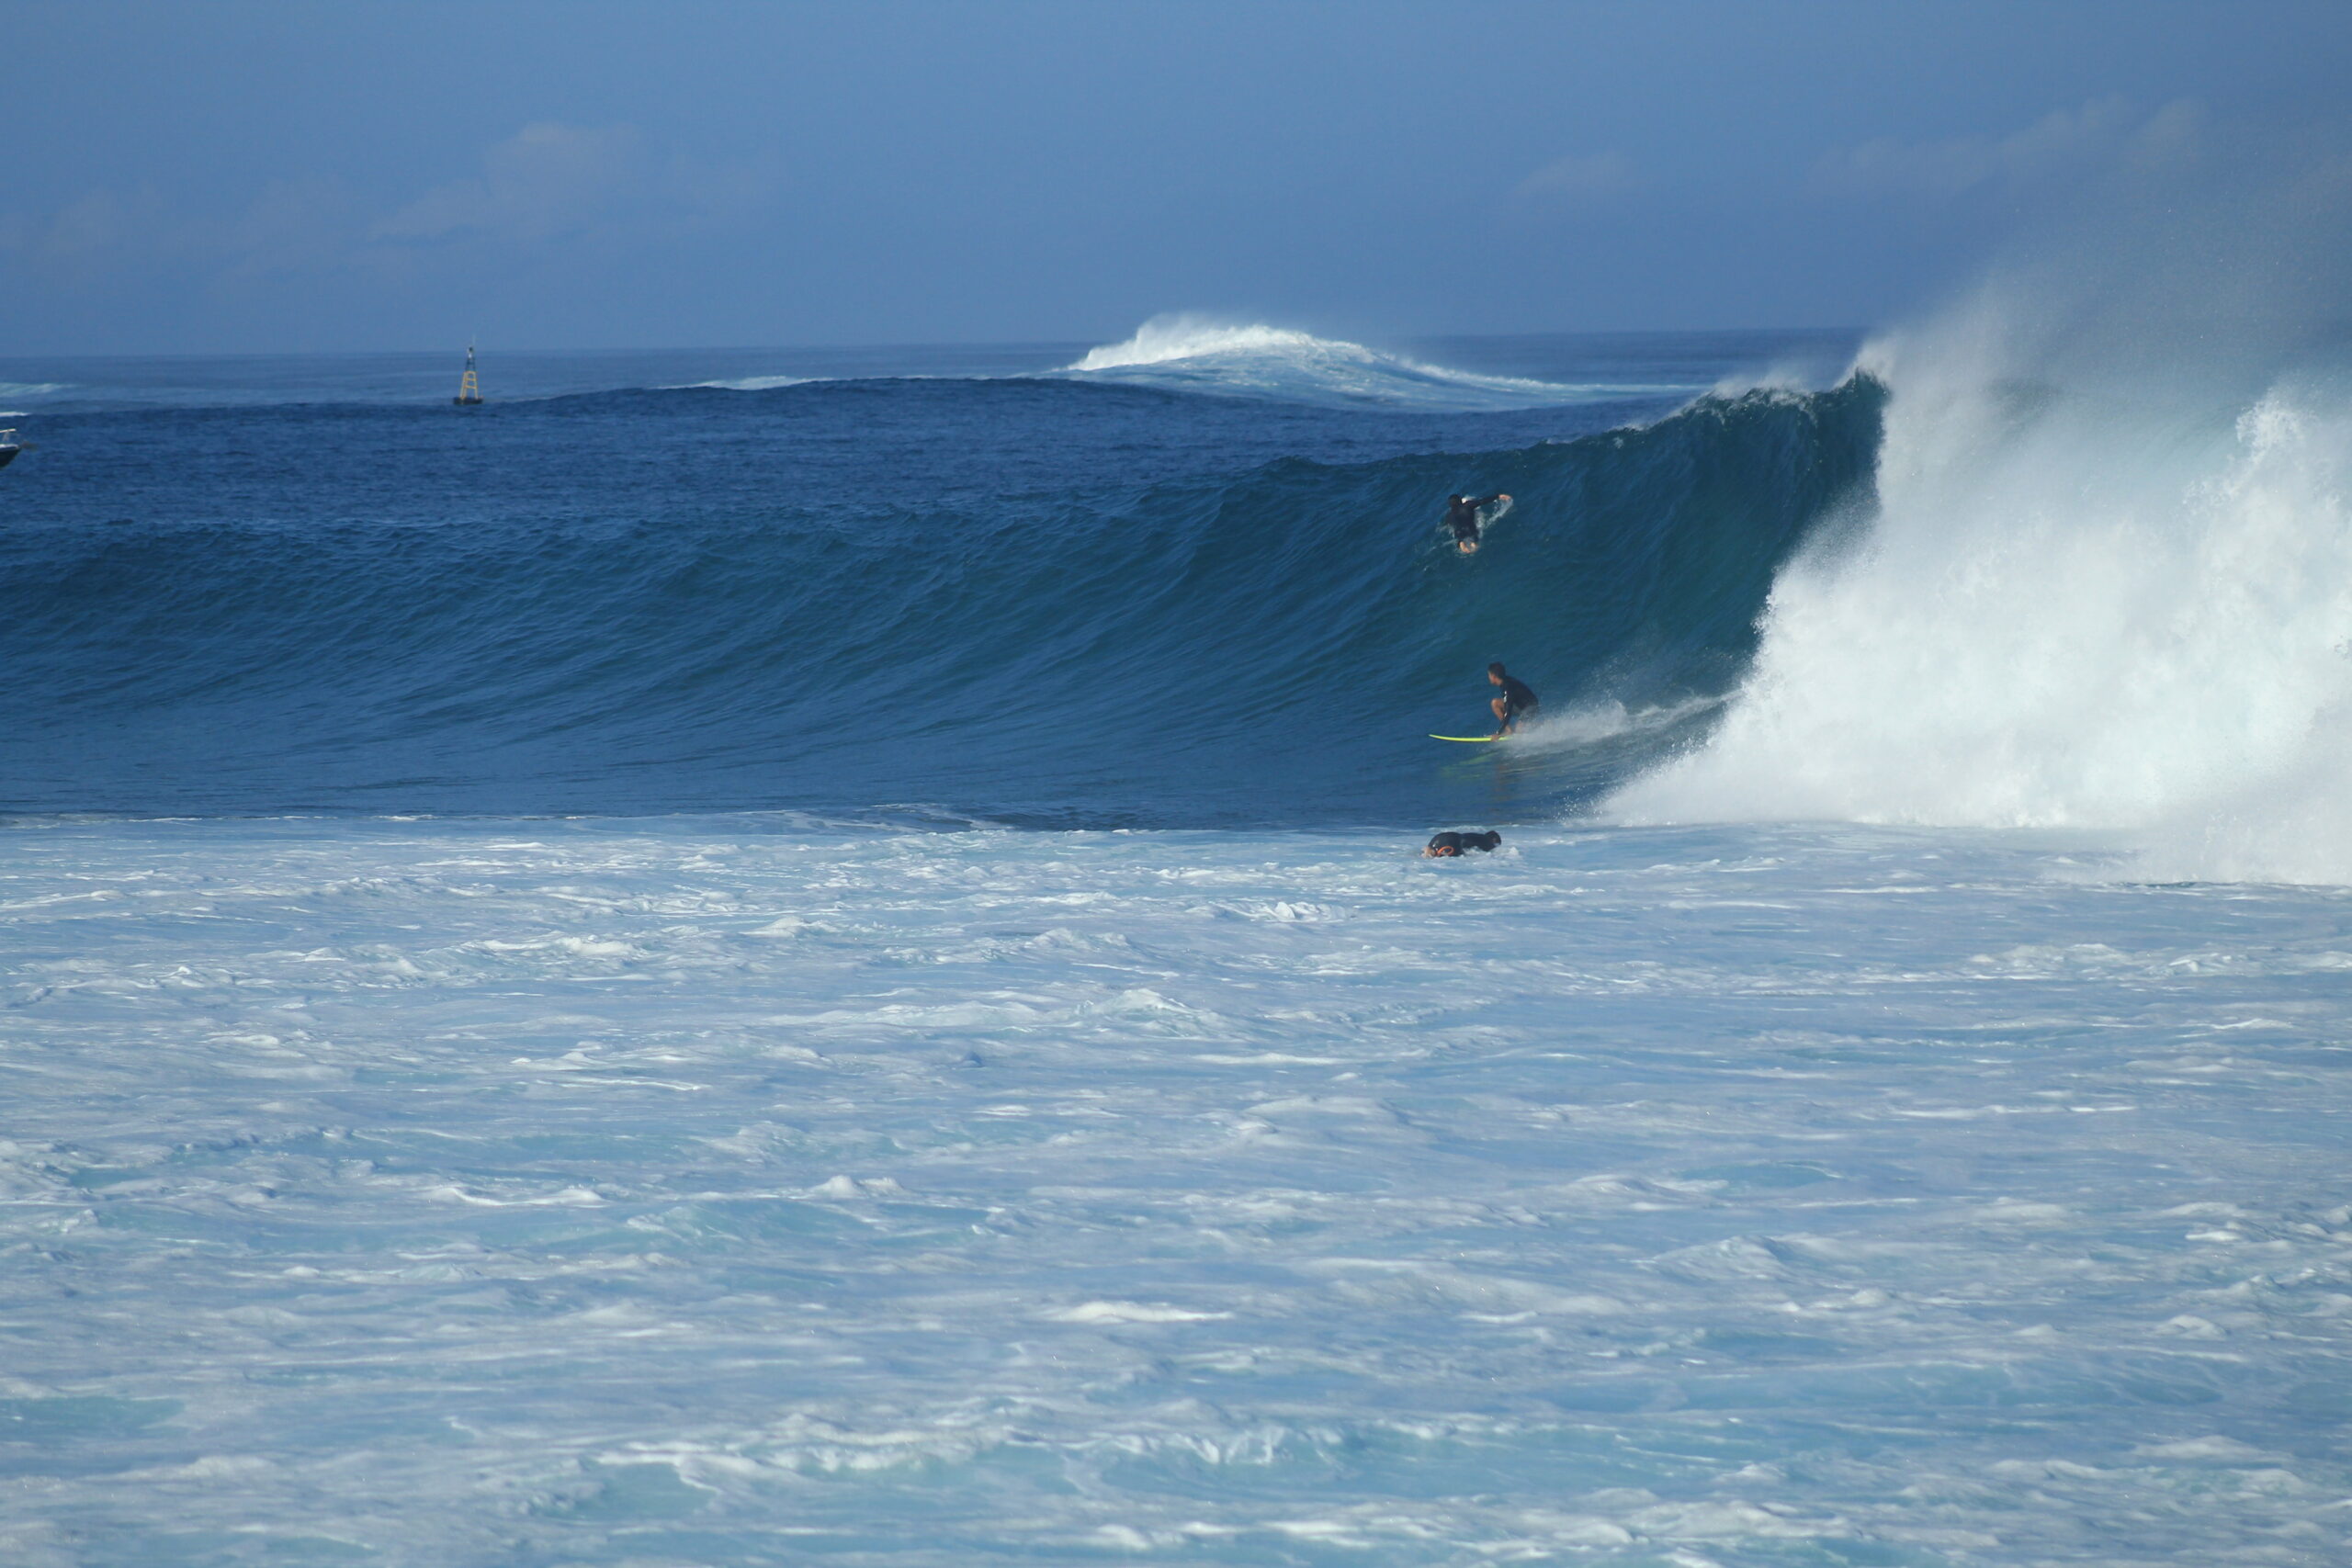 surfing a big wave at Punta Carola, San Cristobal, Galapagos